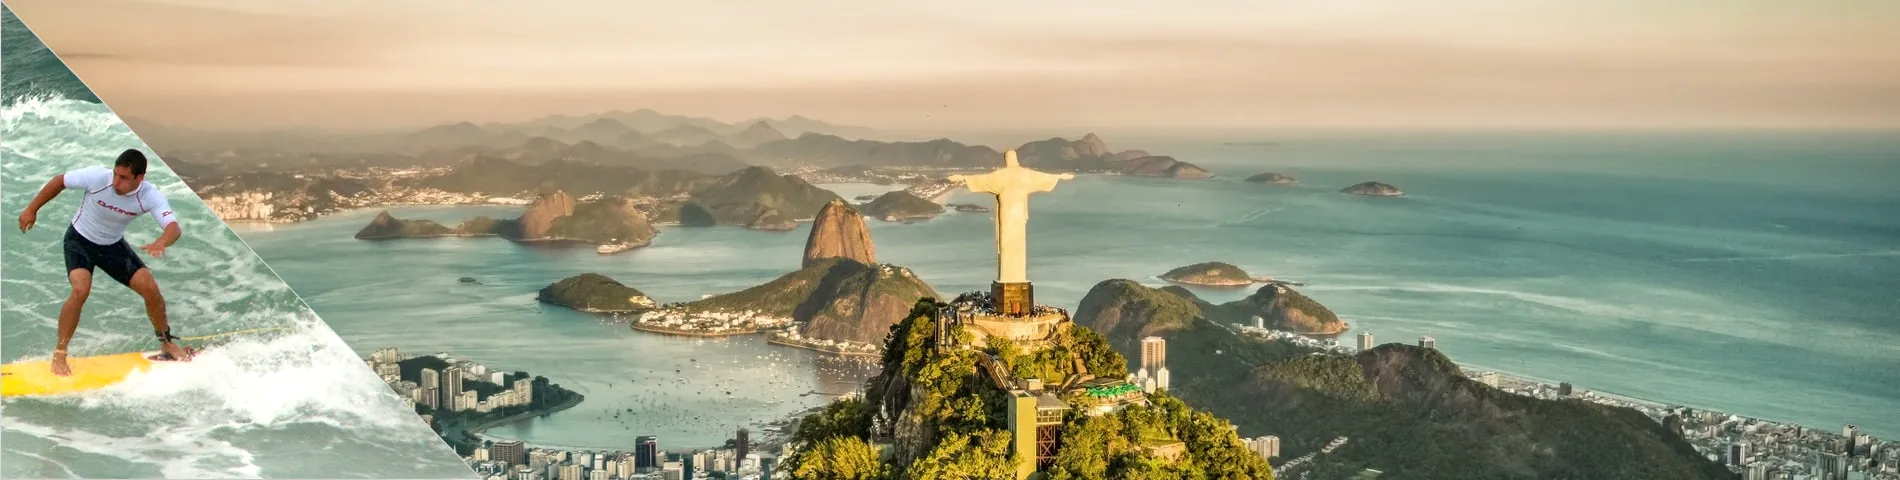 Rio de Janeiro - Portoghese & Surf